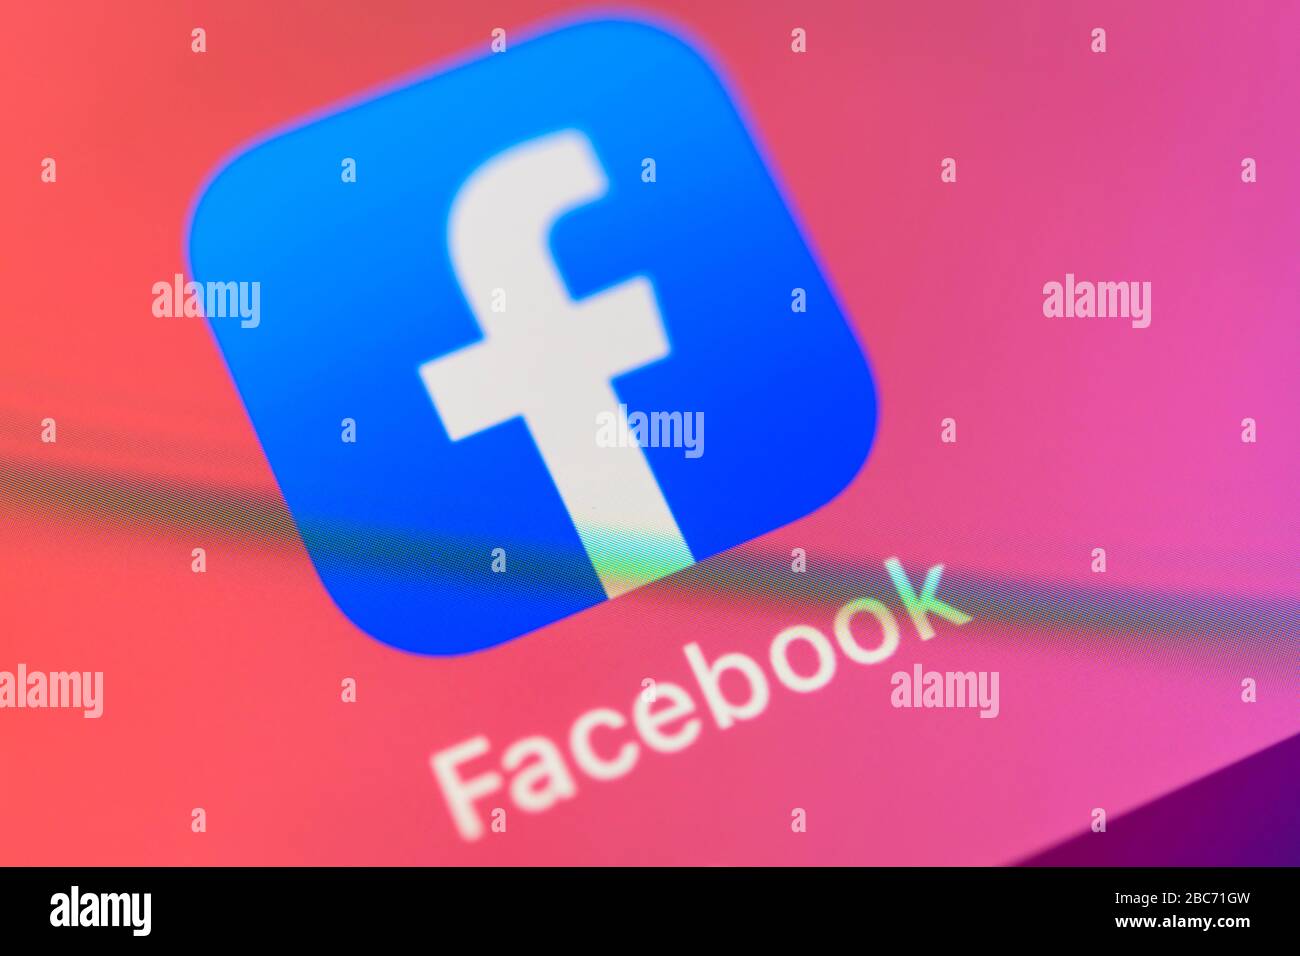 Facebook-App, soziales Netzwerk, App-Symbol, Anzeige auf dem Display von Handy, Smartphone, Detail, Vollformat Stockfoto